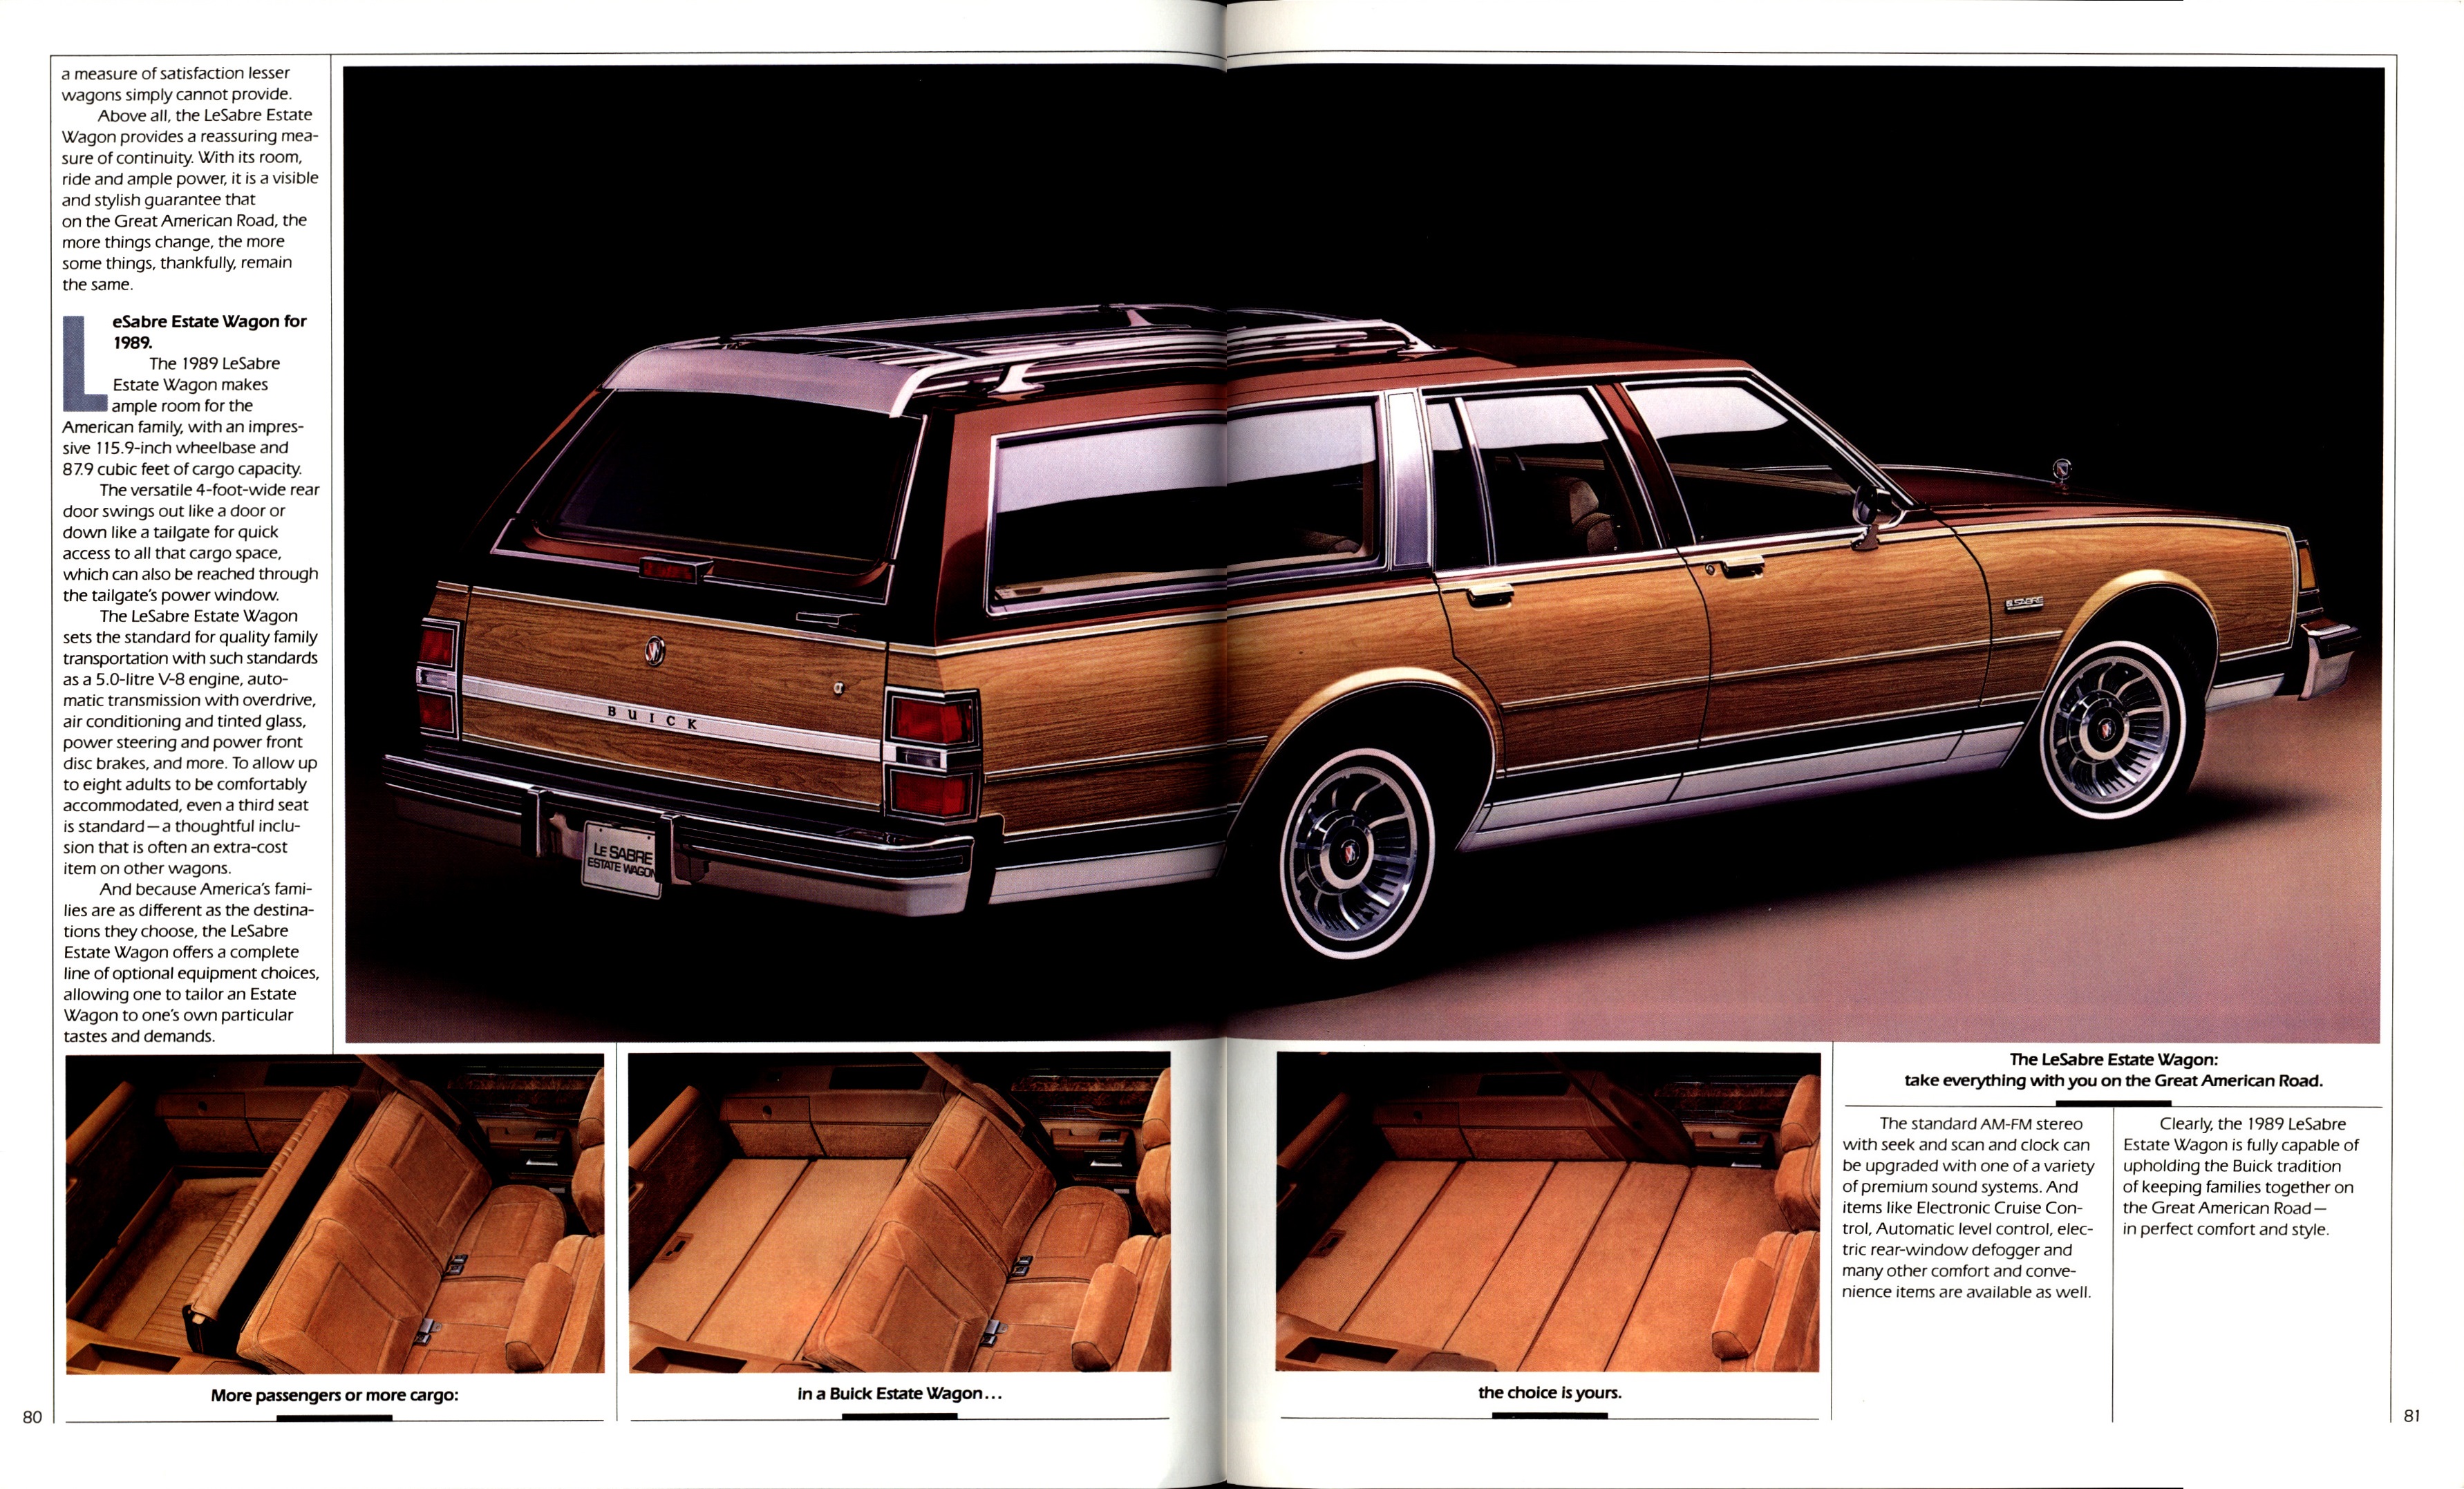 1989 Buick Full Line Prestige-80-81